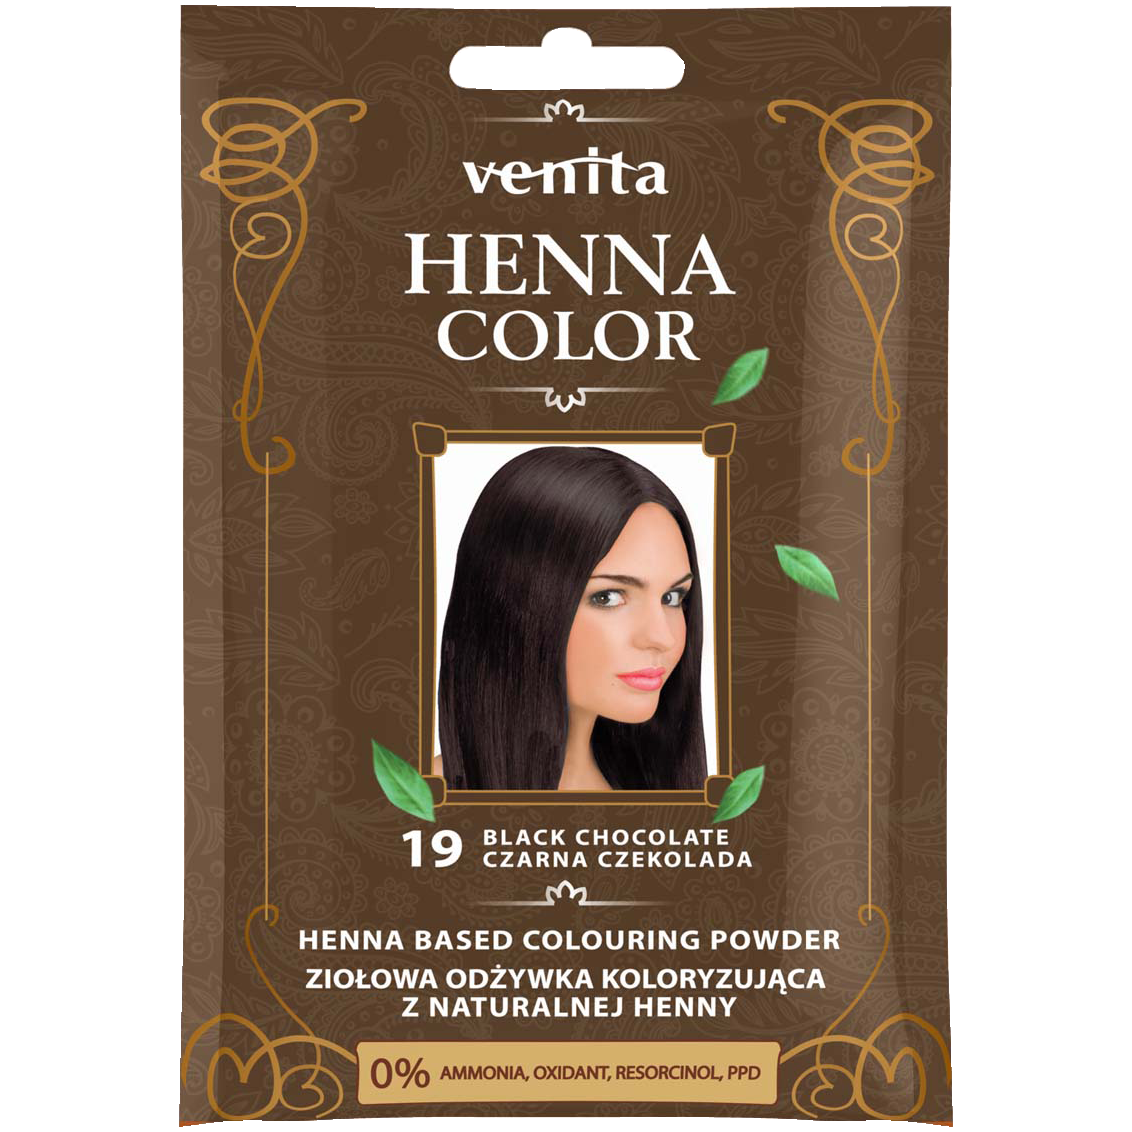 Травяной кондиционер-краситель с хной для волос 19 черный шоколад Venita Henna Color, 75 гр